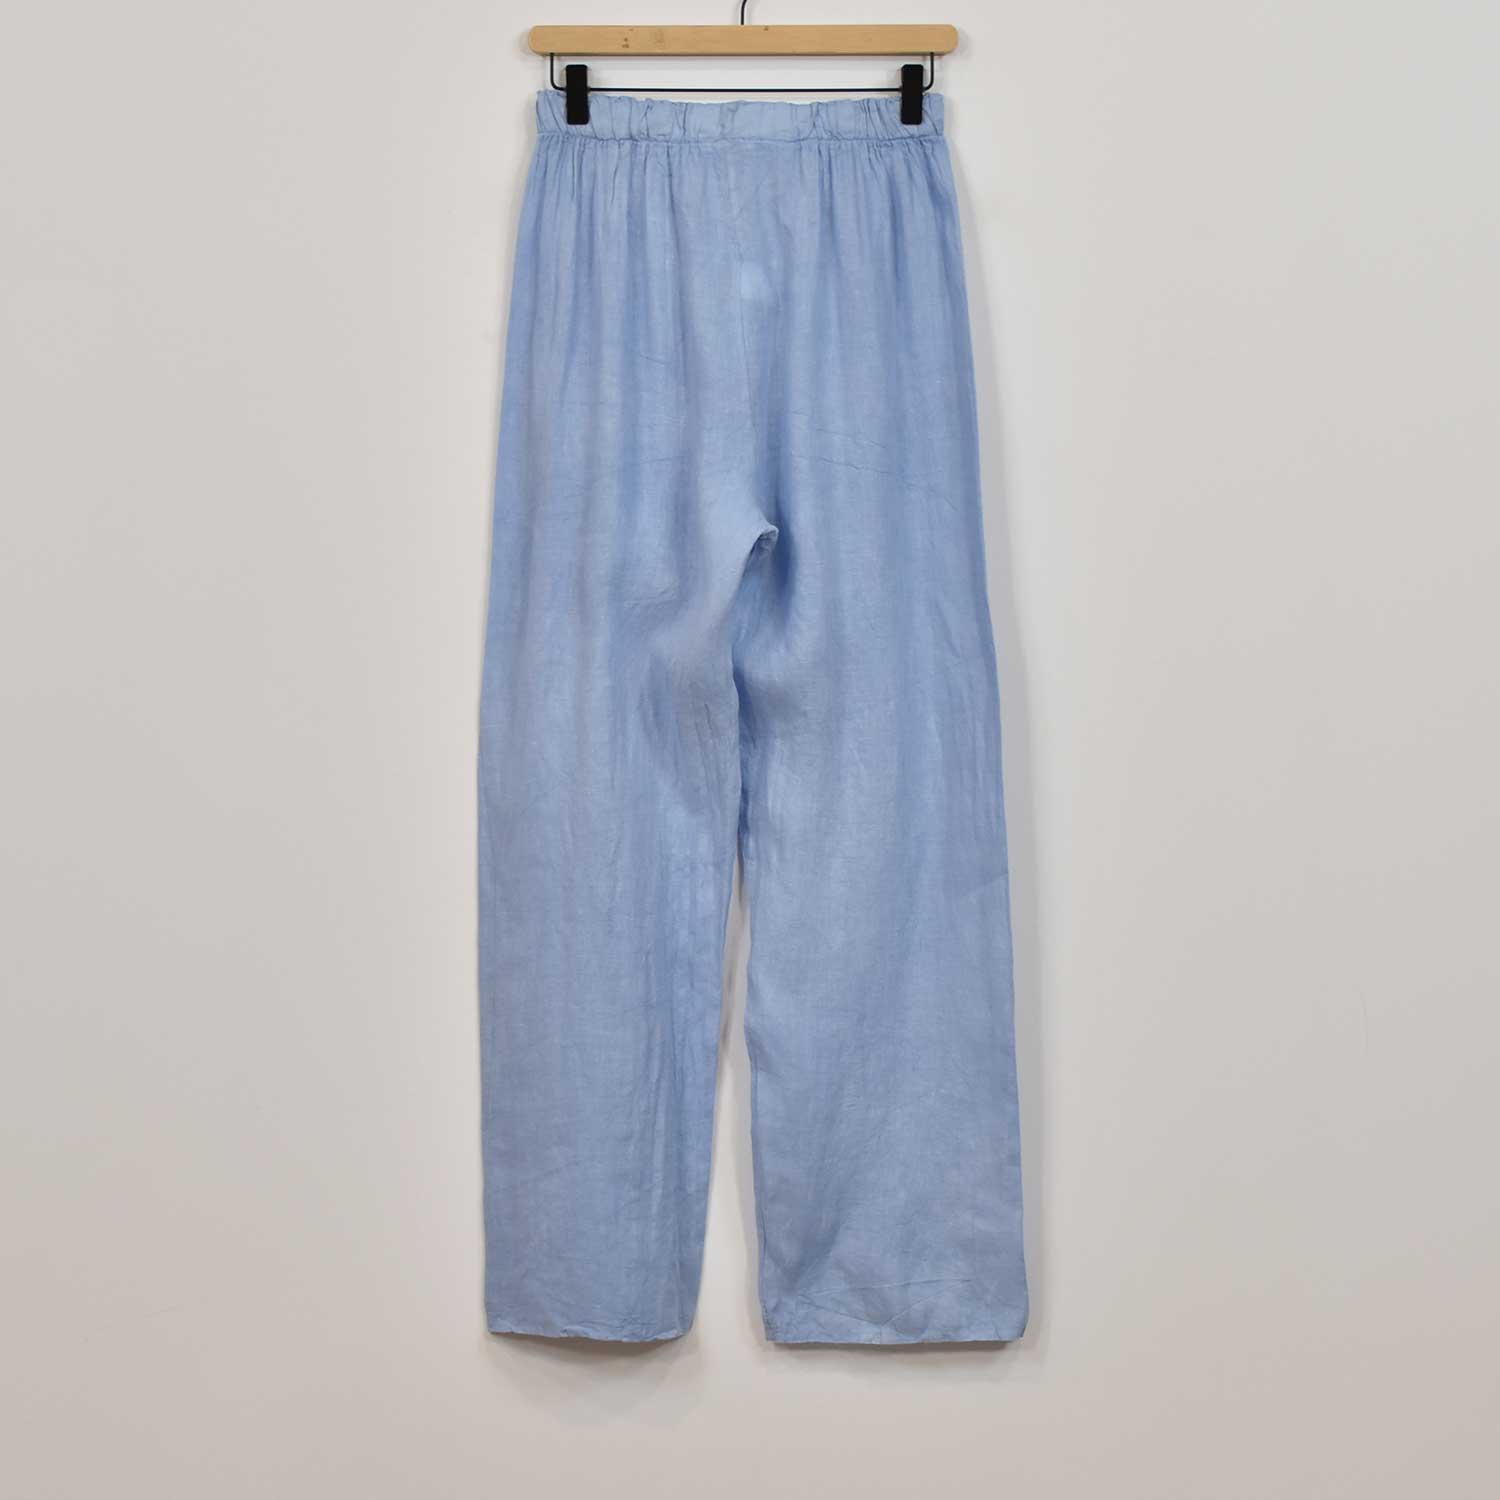 Blue wide linen pants